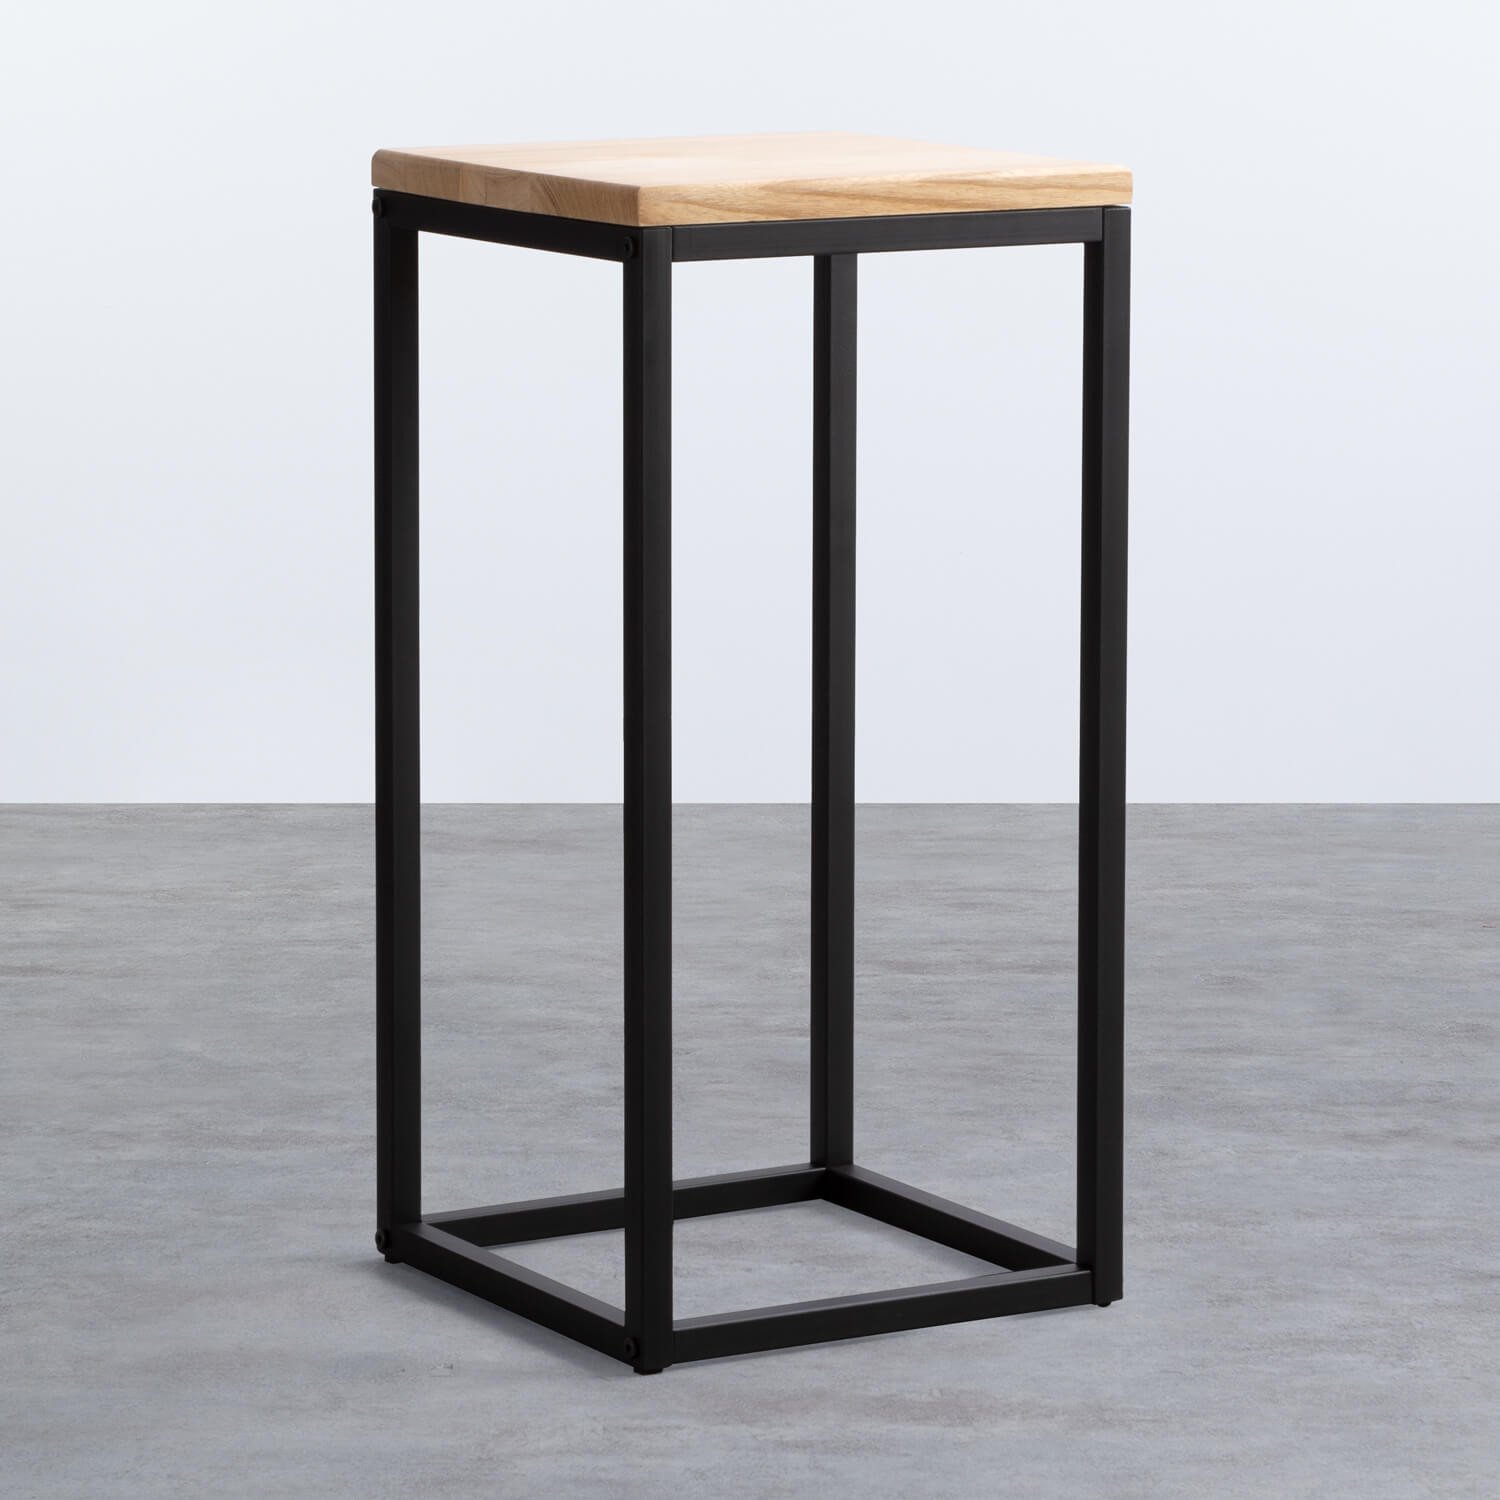 Tavolino Ausiliare Quadrato in Legno e Metallo (30 x 30 cm) Ferro Alto, immagine della galleria 1